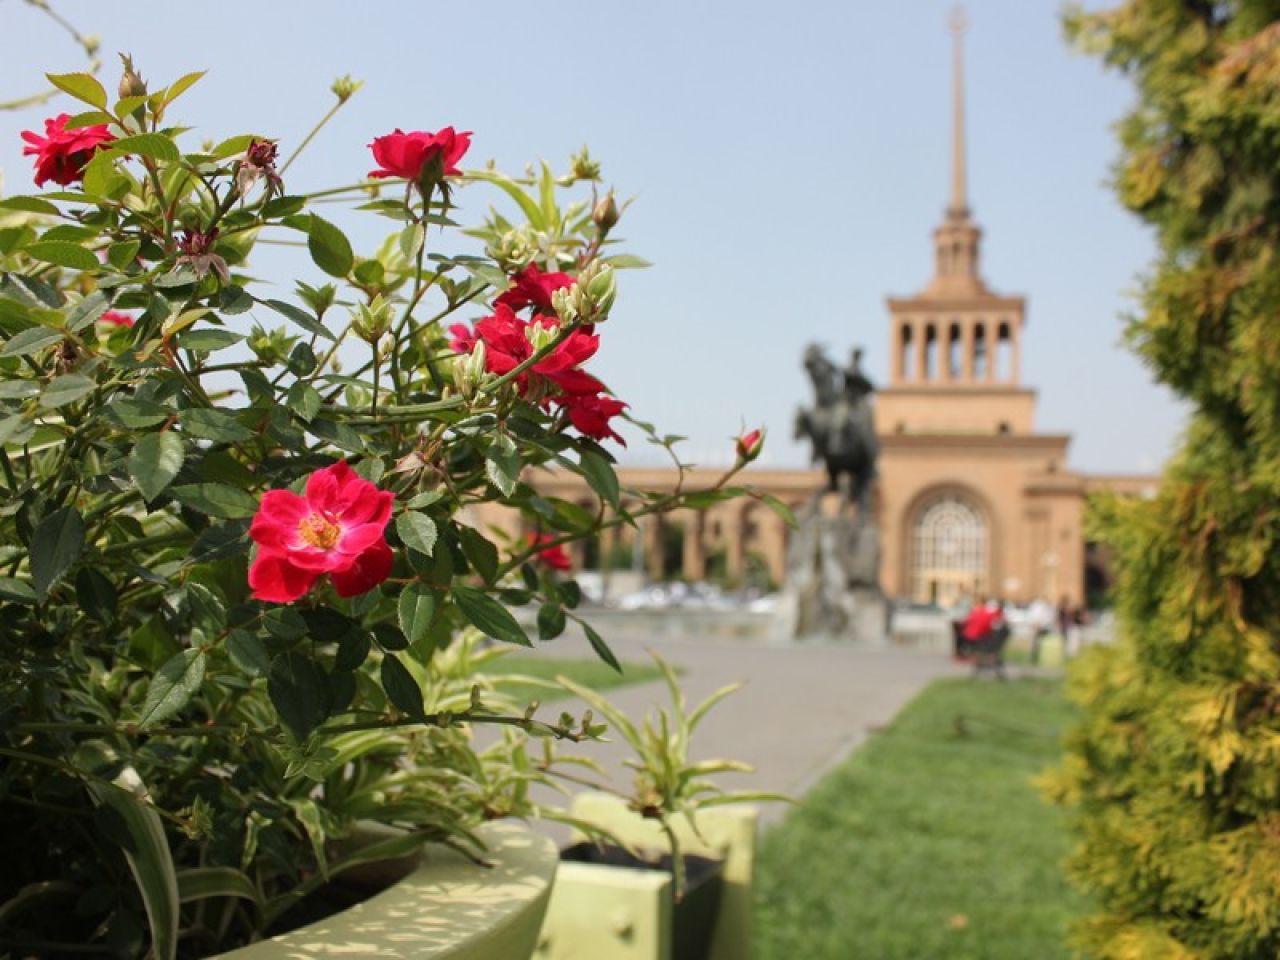 Երևանը հաջորդ տարվանից պատրաստվում է անցնել ճանապարհների ընթացիկ սպասարկման